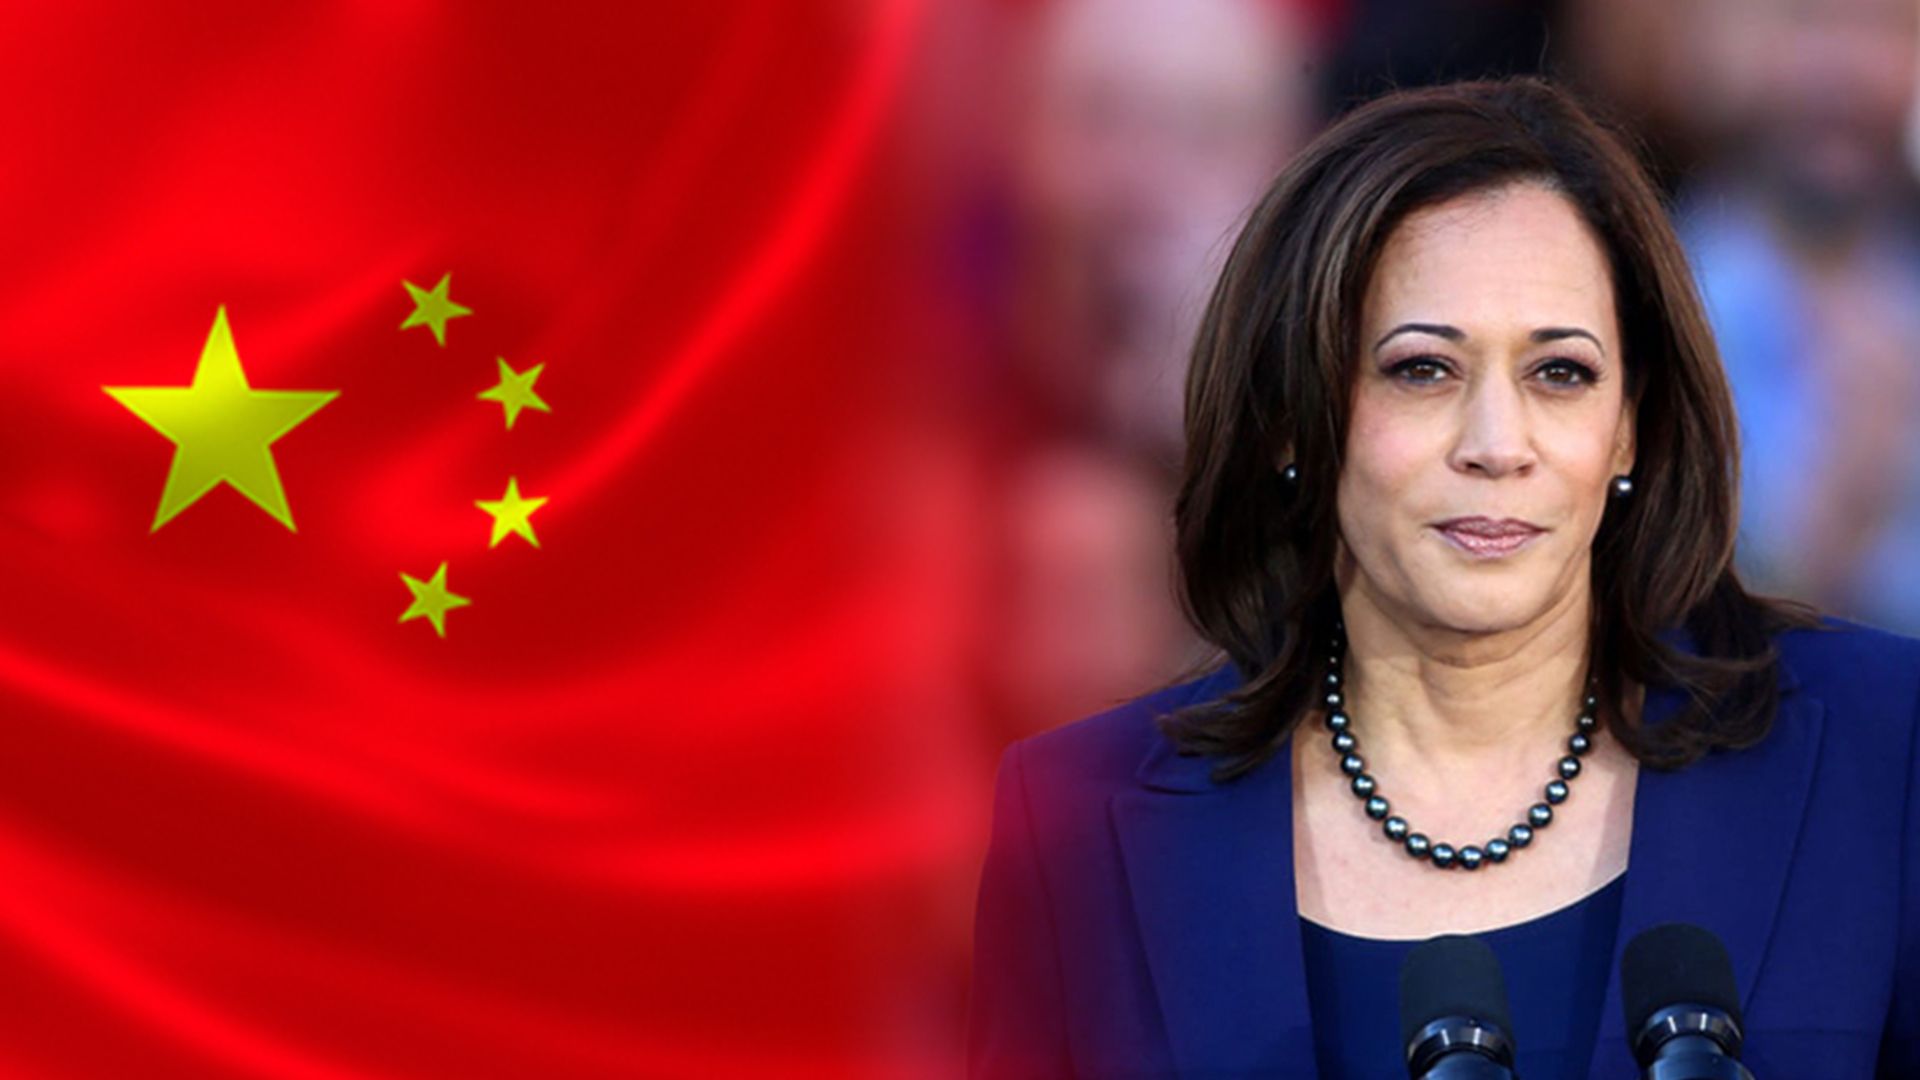 अमेरिकी उपराष्ट्रपतिद्वारा अष्ट्रेलियाका प्रधानमन्त्रीसँग चीनलगायतका विषयमा छलफल